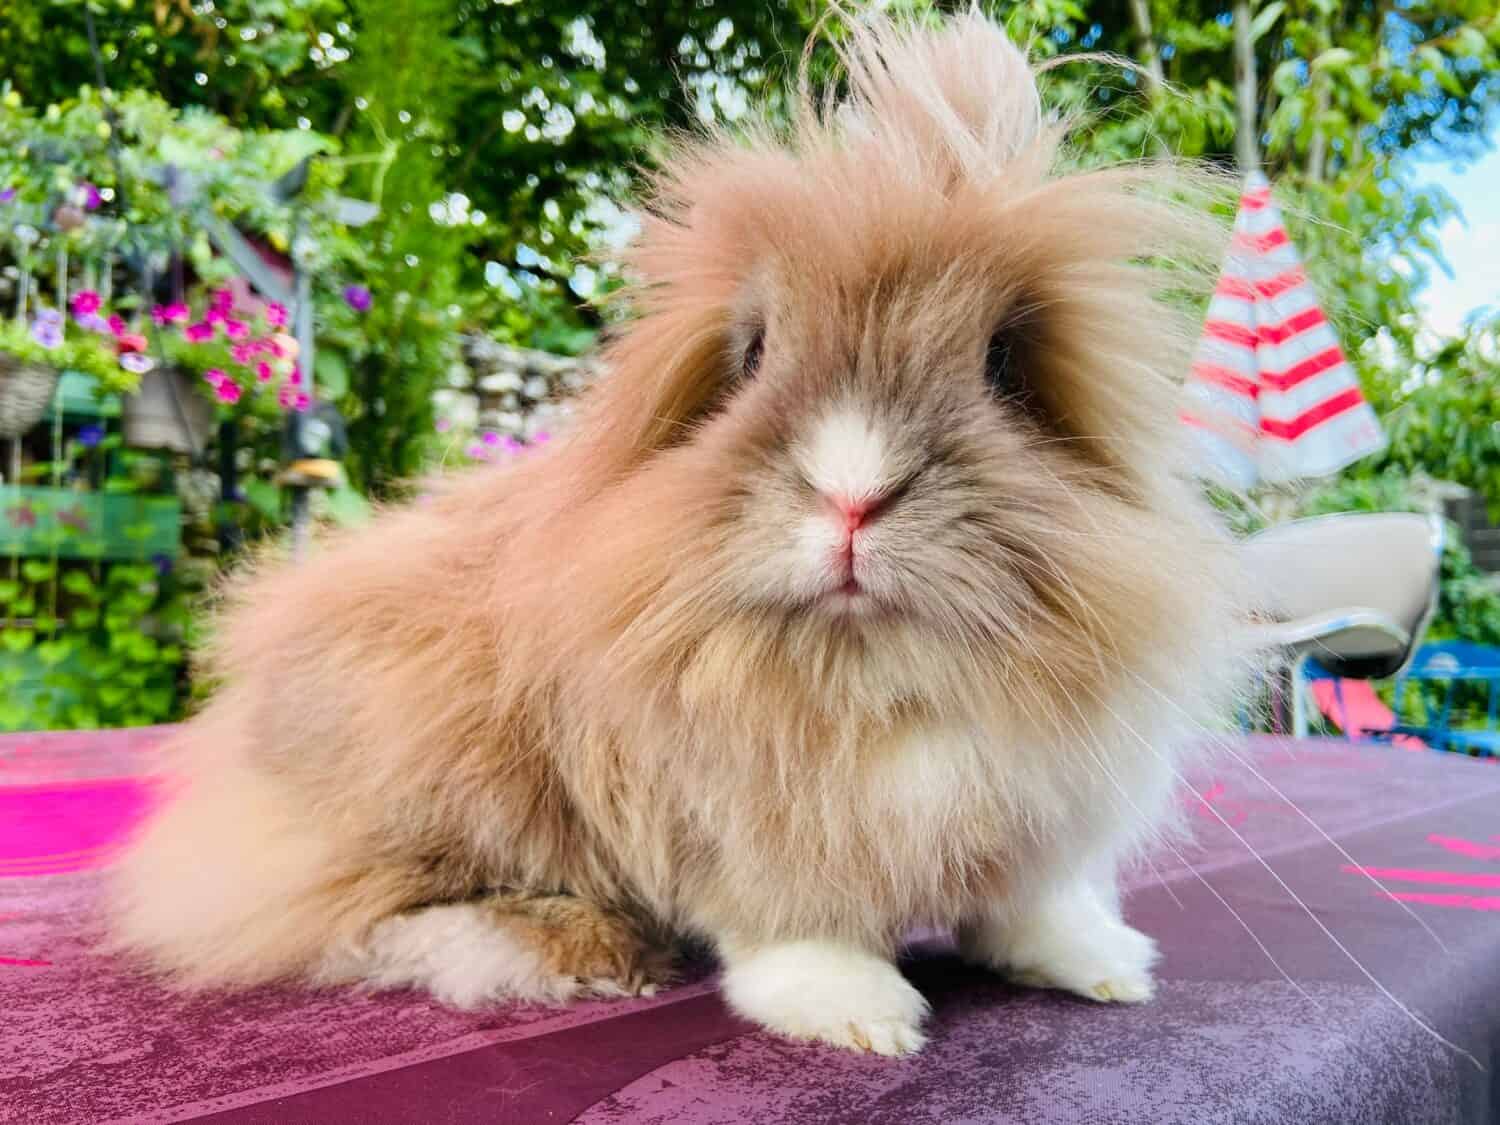 Cute bunny - Happy Lionhead rabbit with fluffy fur